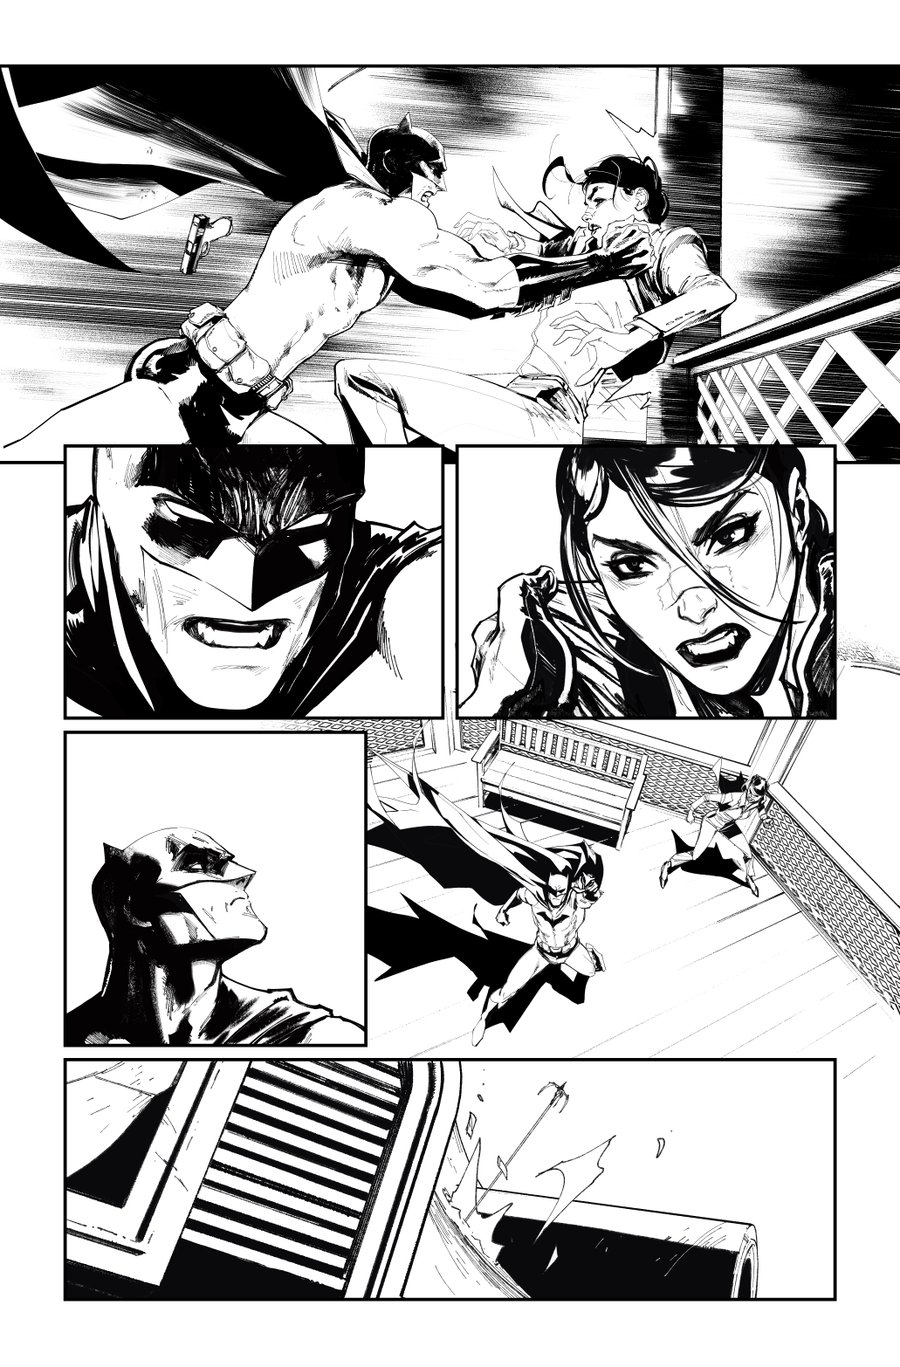 Image of BATMAN KILLING TIME #5 p.26